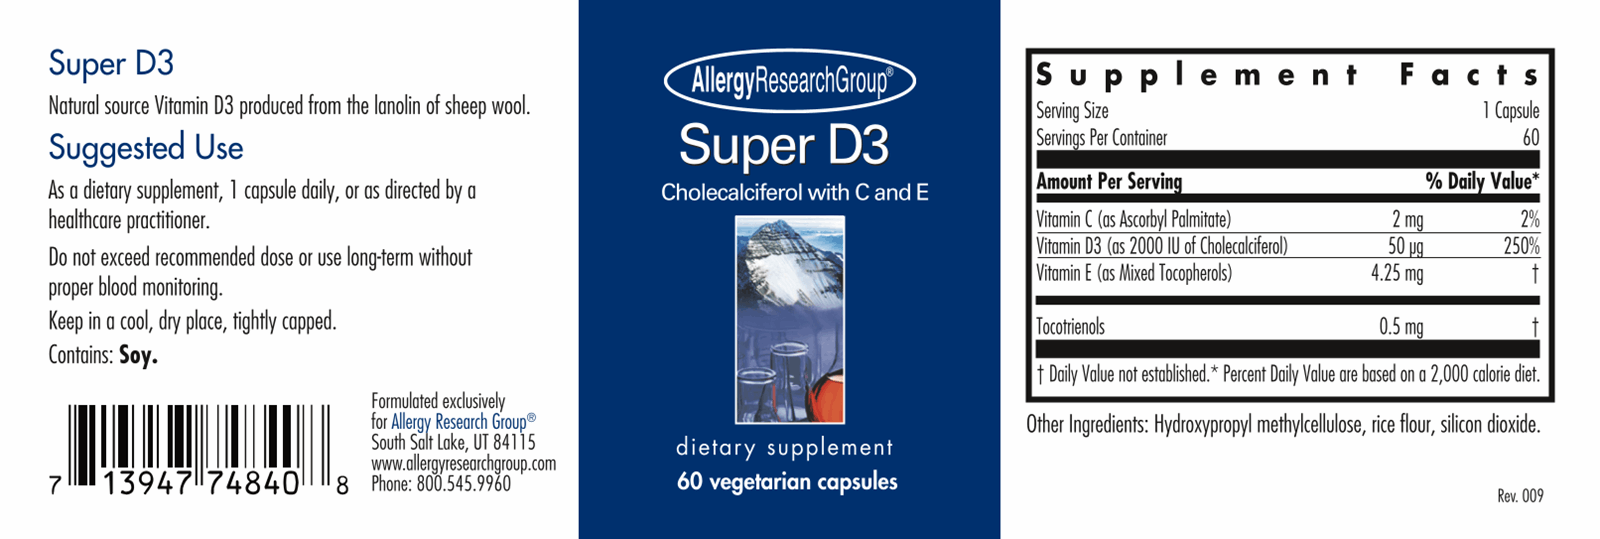 Super D3 